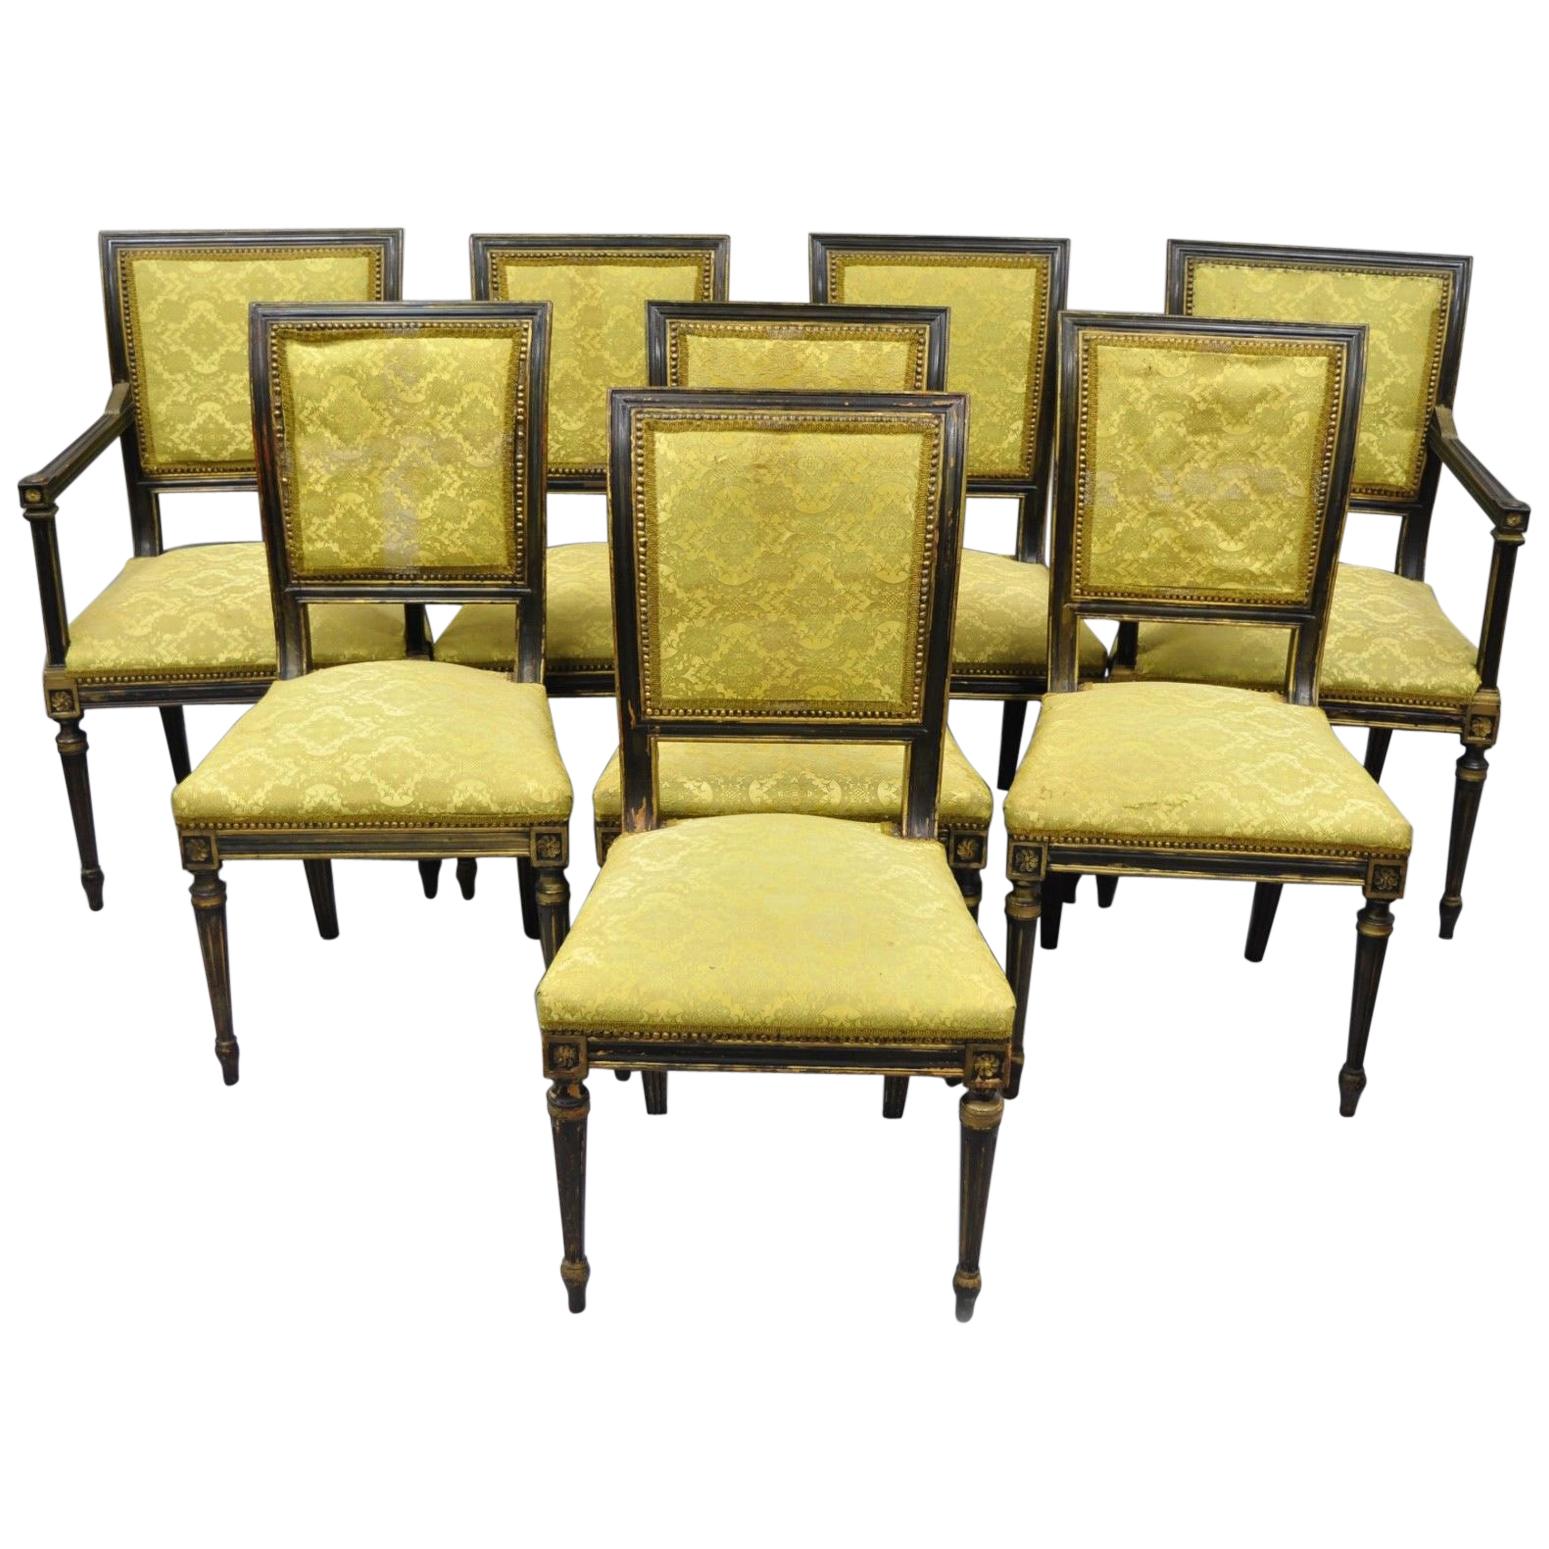 Acht französische gepolsterte Esszimmerstühle mit quadratischer Rückenlehne im Regency-Stil